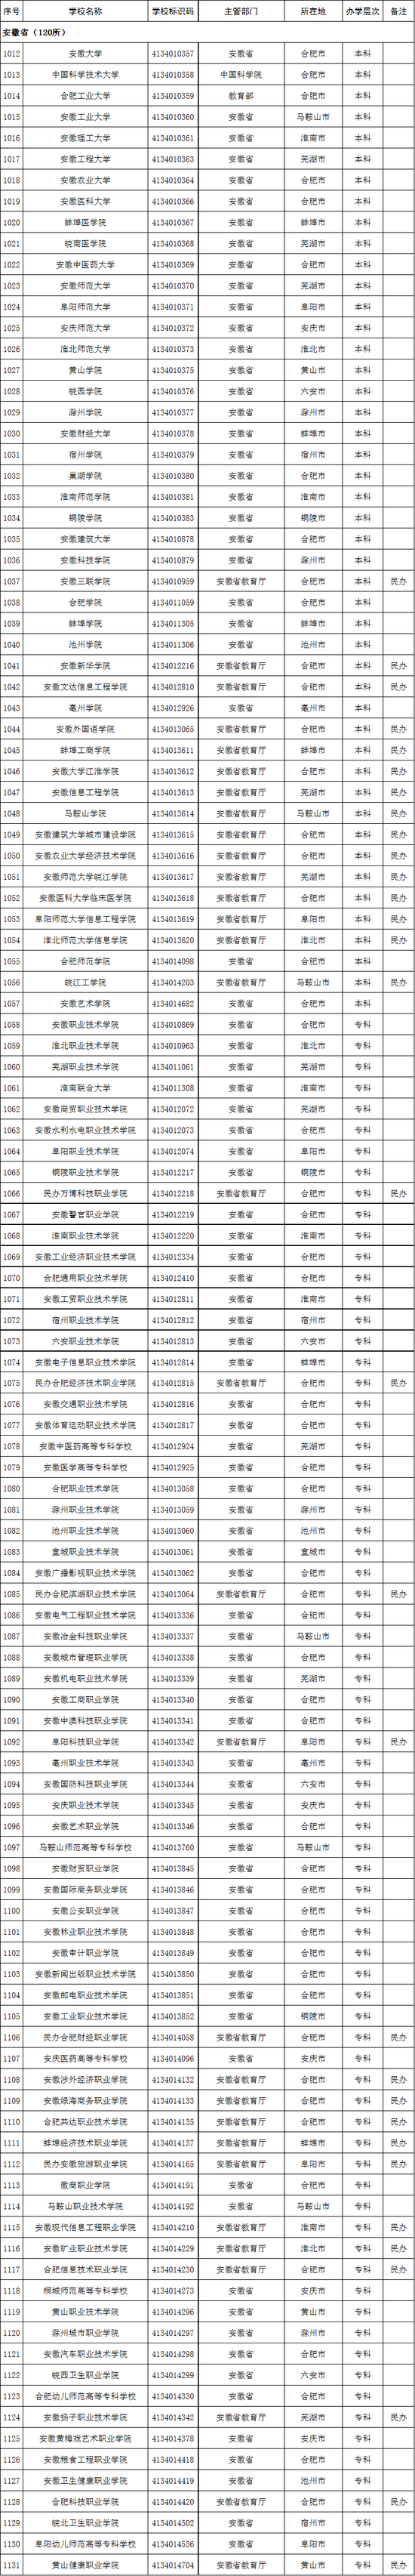 安徽省2020年高校名单(120所)